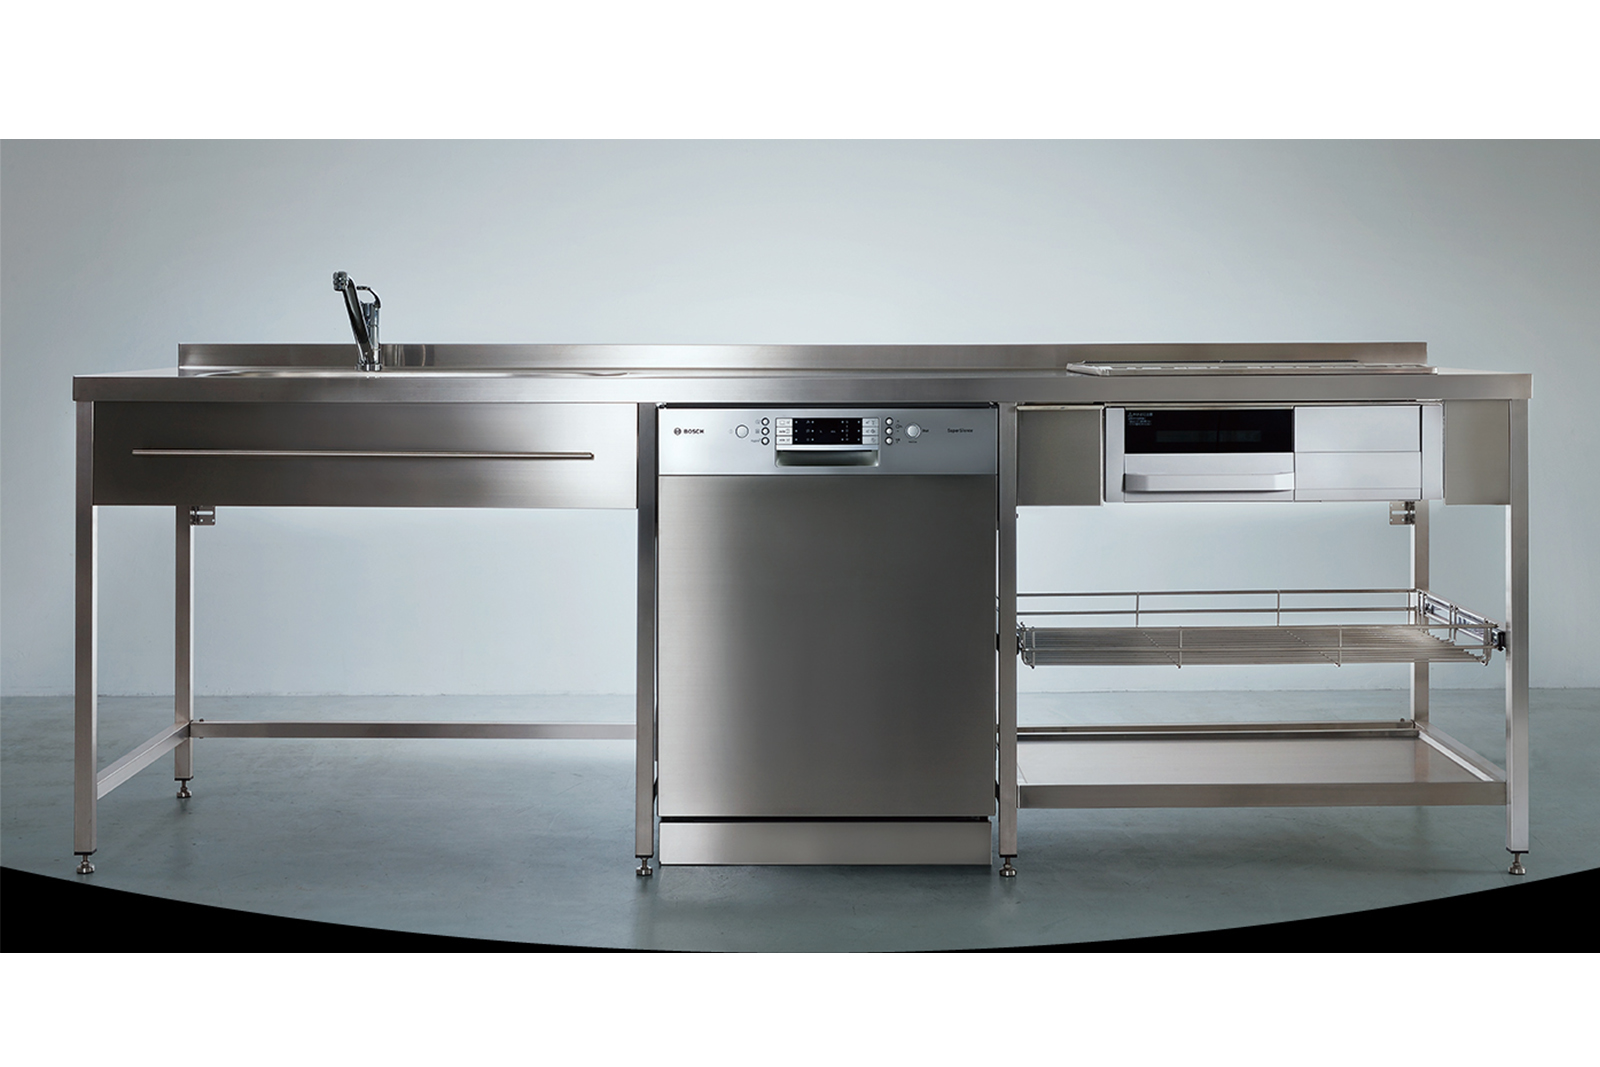 ステンレスフレームキッチン W2550×D650 KB-KC005-04-G078 中央はオプションのフロントオープン食洗機 W600（W2100・W2250・W2400はW450の食洗機のみ設置可能）※タオルバーは旧仕様のW800、現行はW490